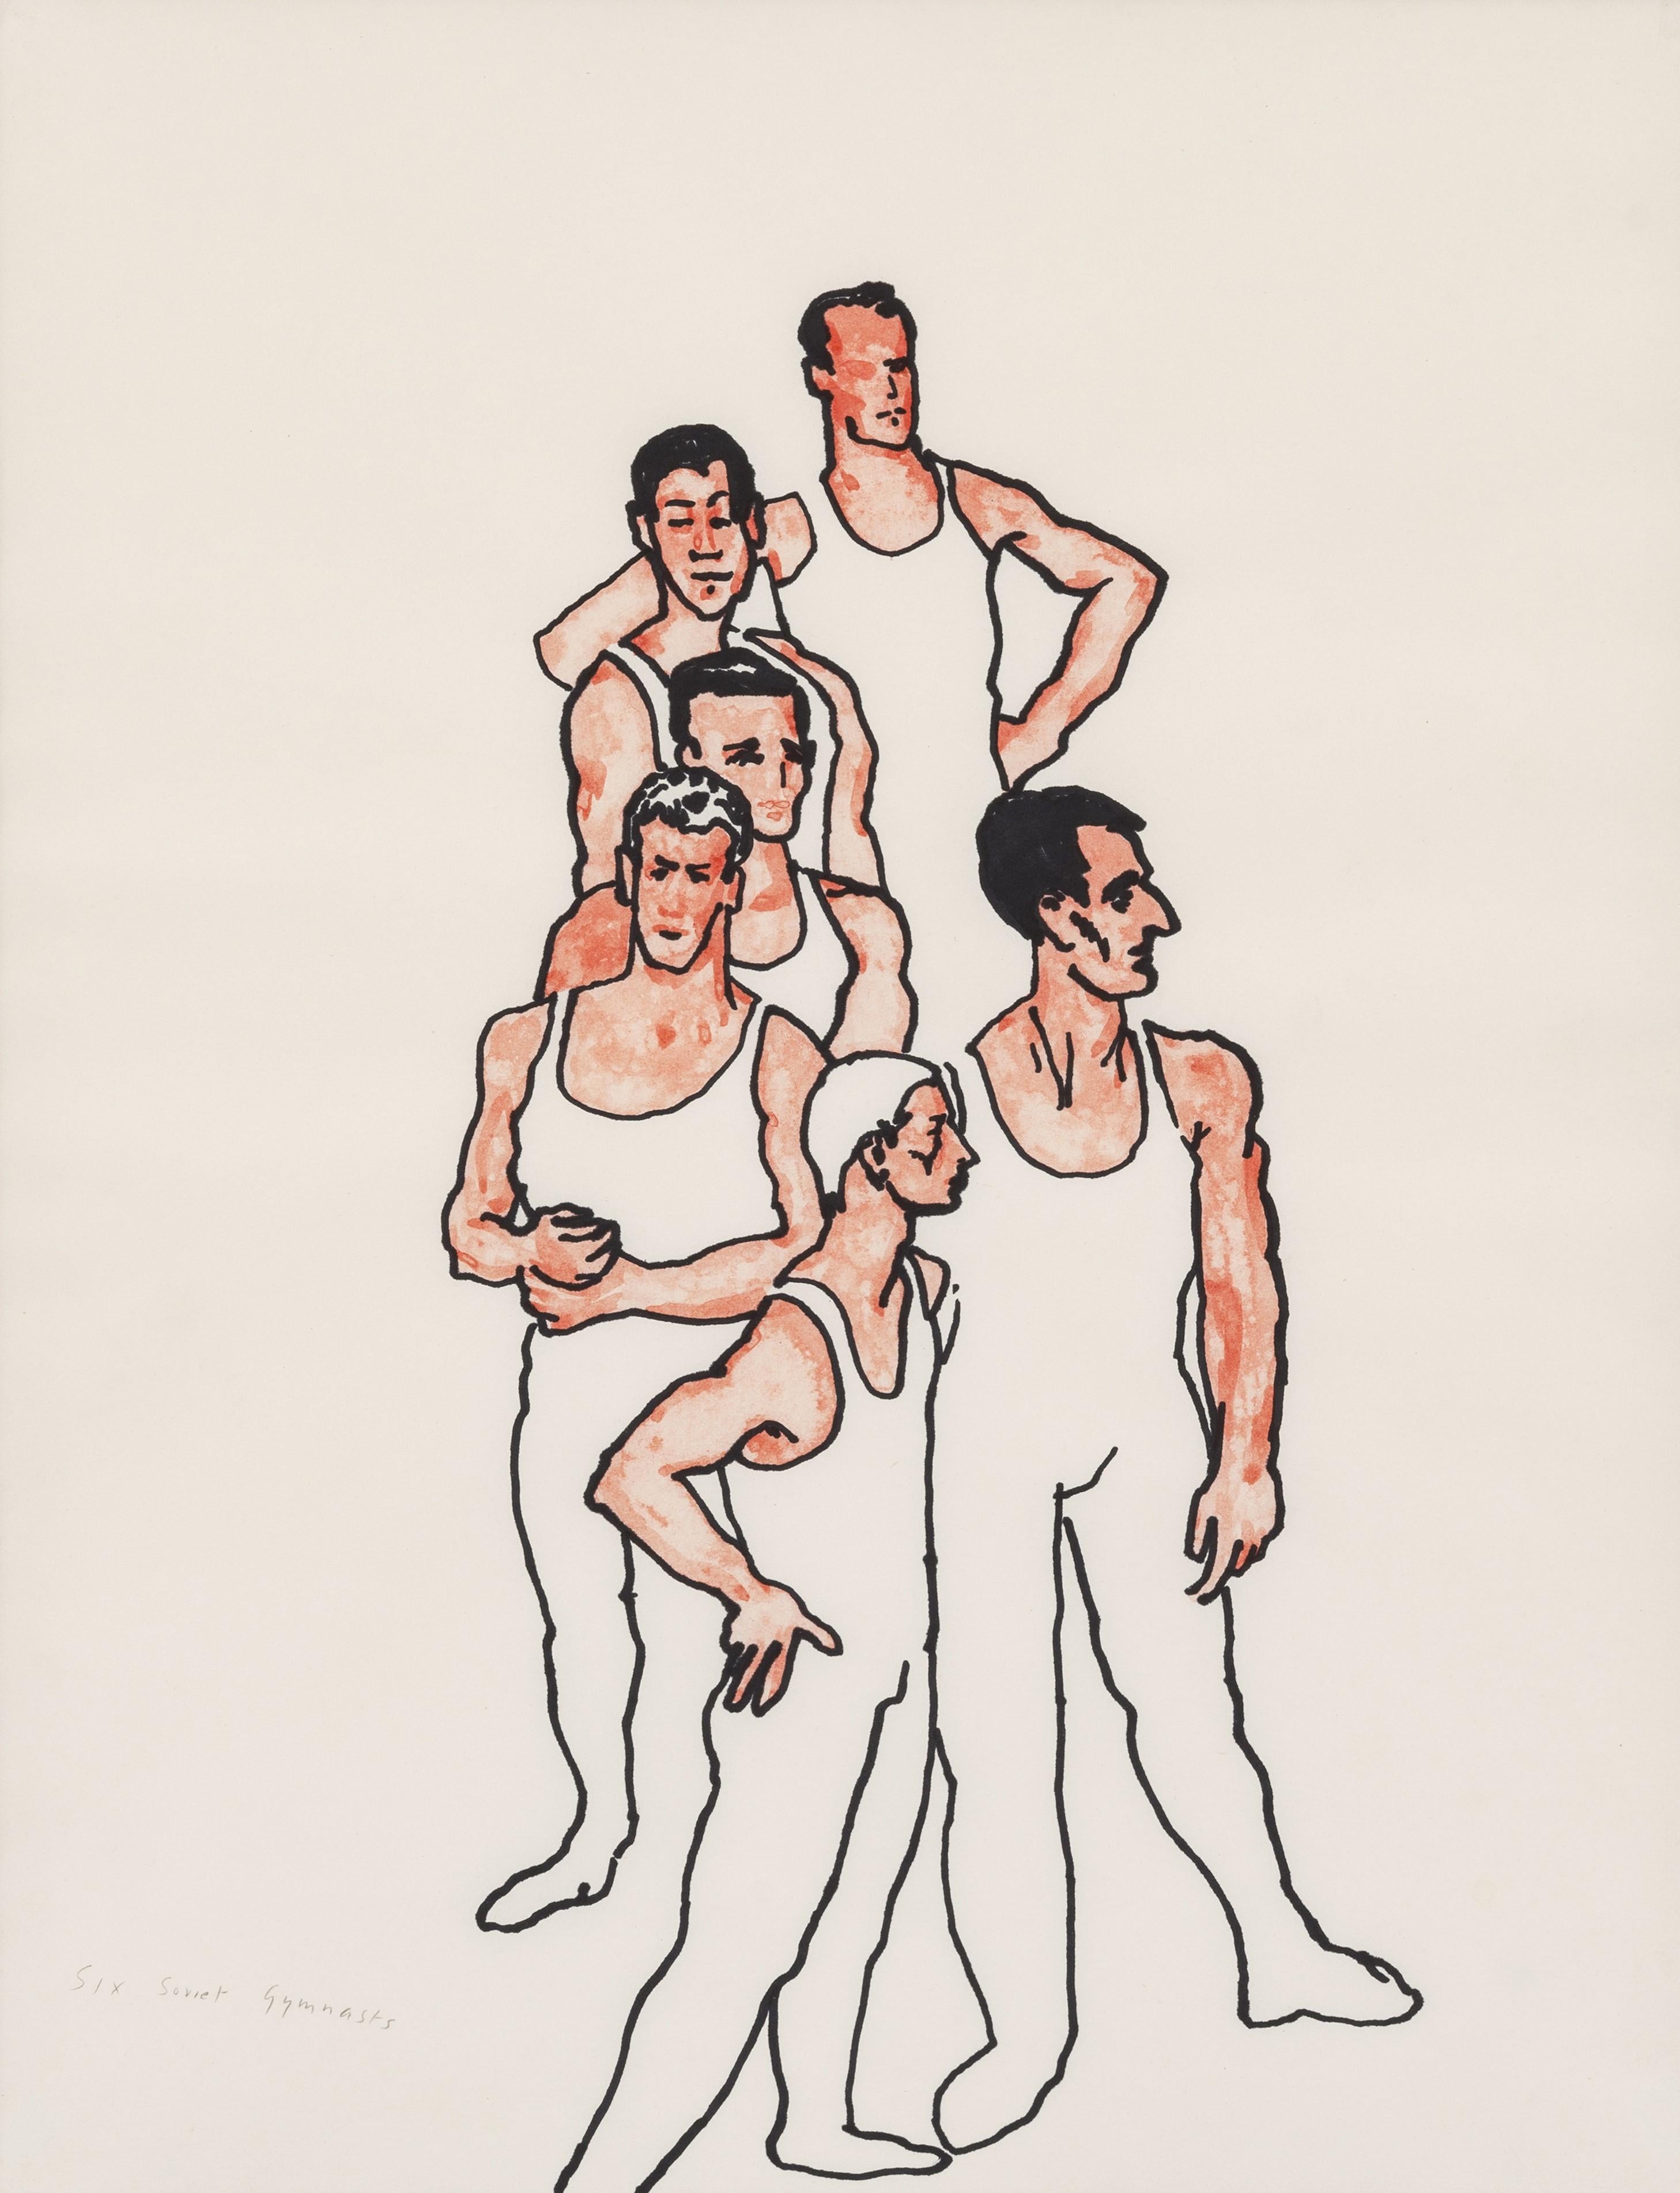 Sechs sowjetische Gymnasten – Art von Patrick Procktor